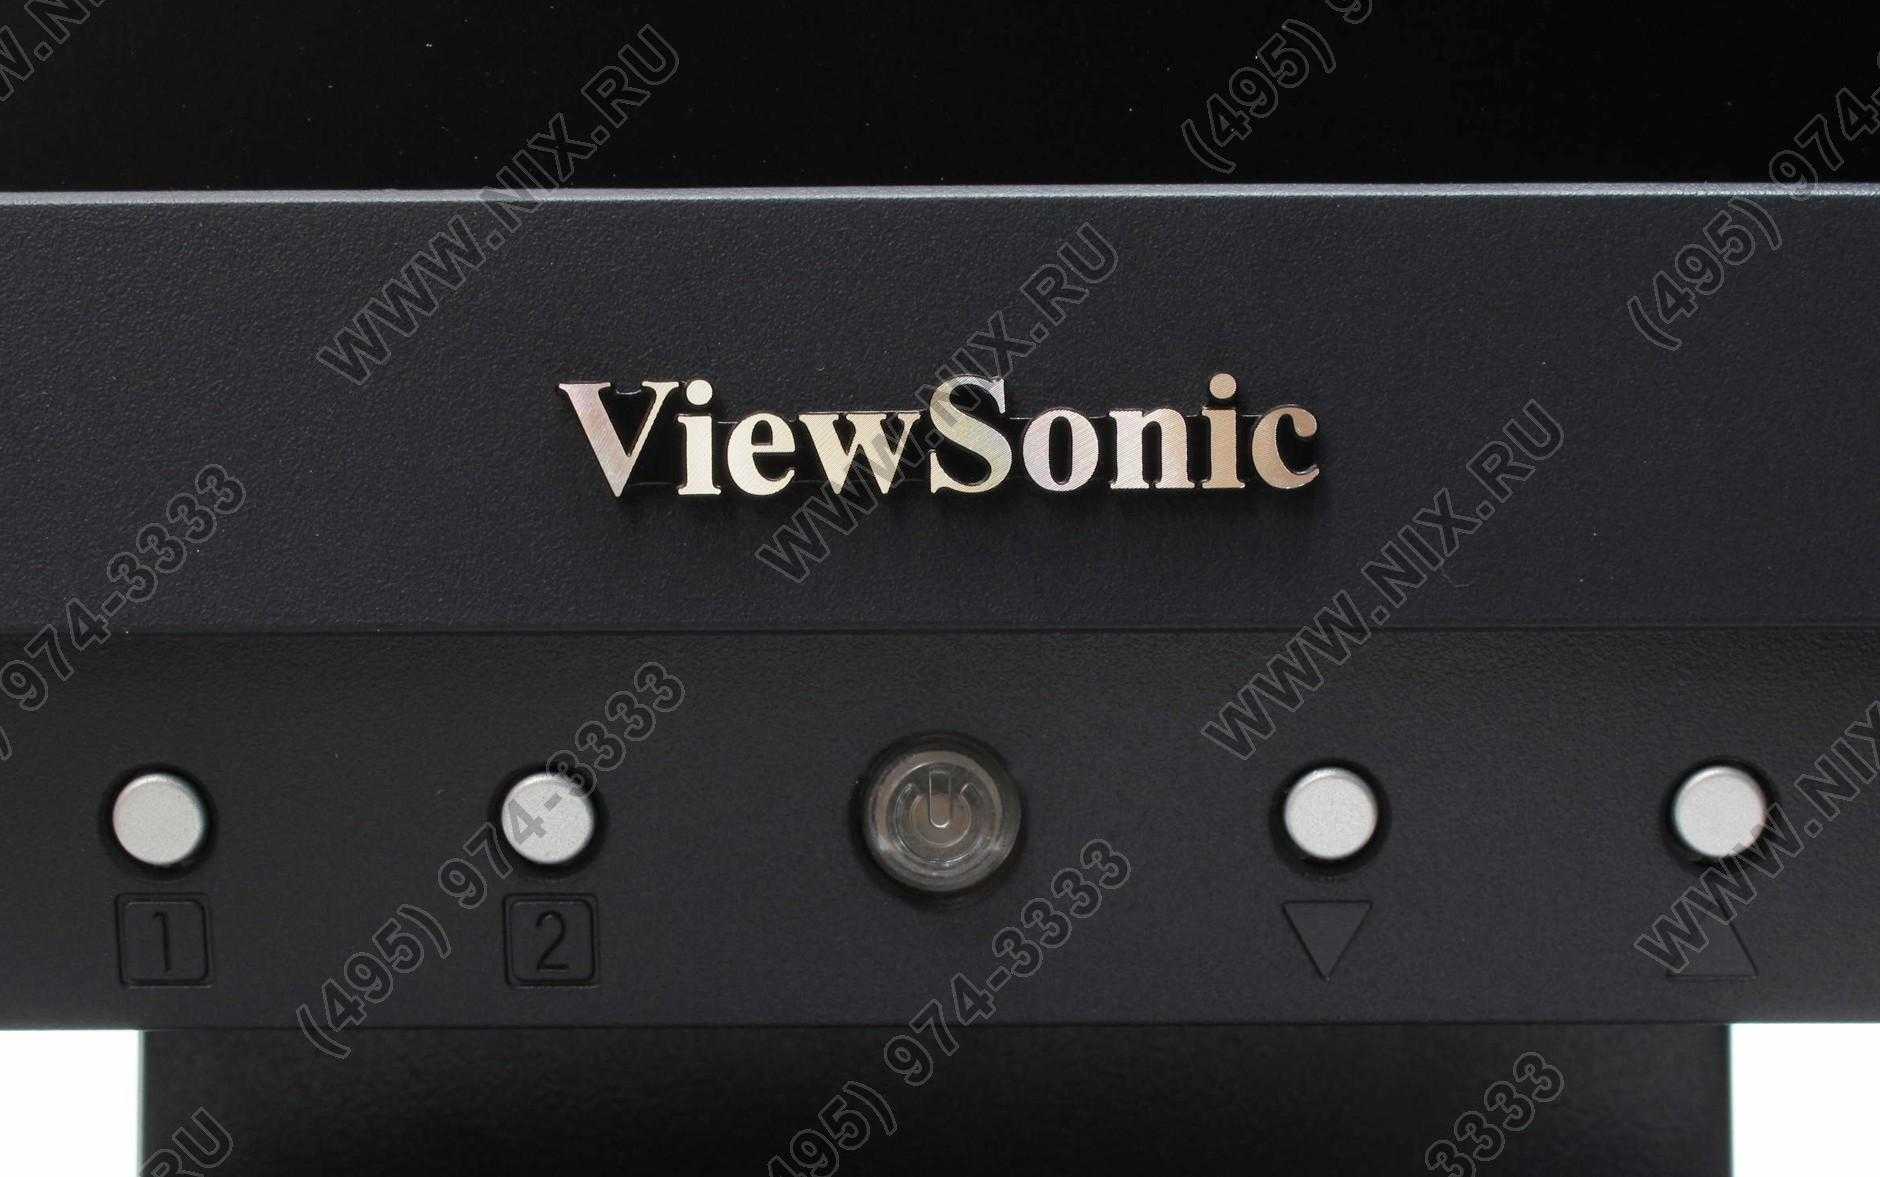 Viewsonic va705b - купить , скидки, цена, отзывы, обзор, характеристики - мониторы